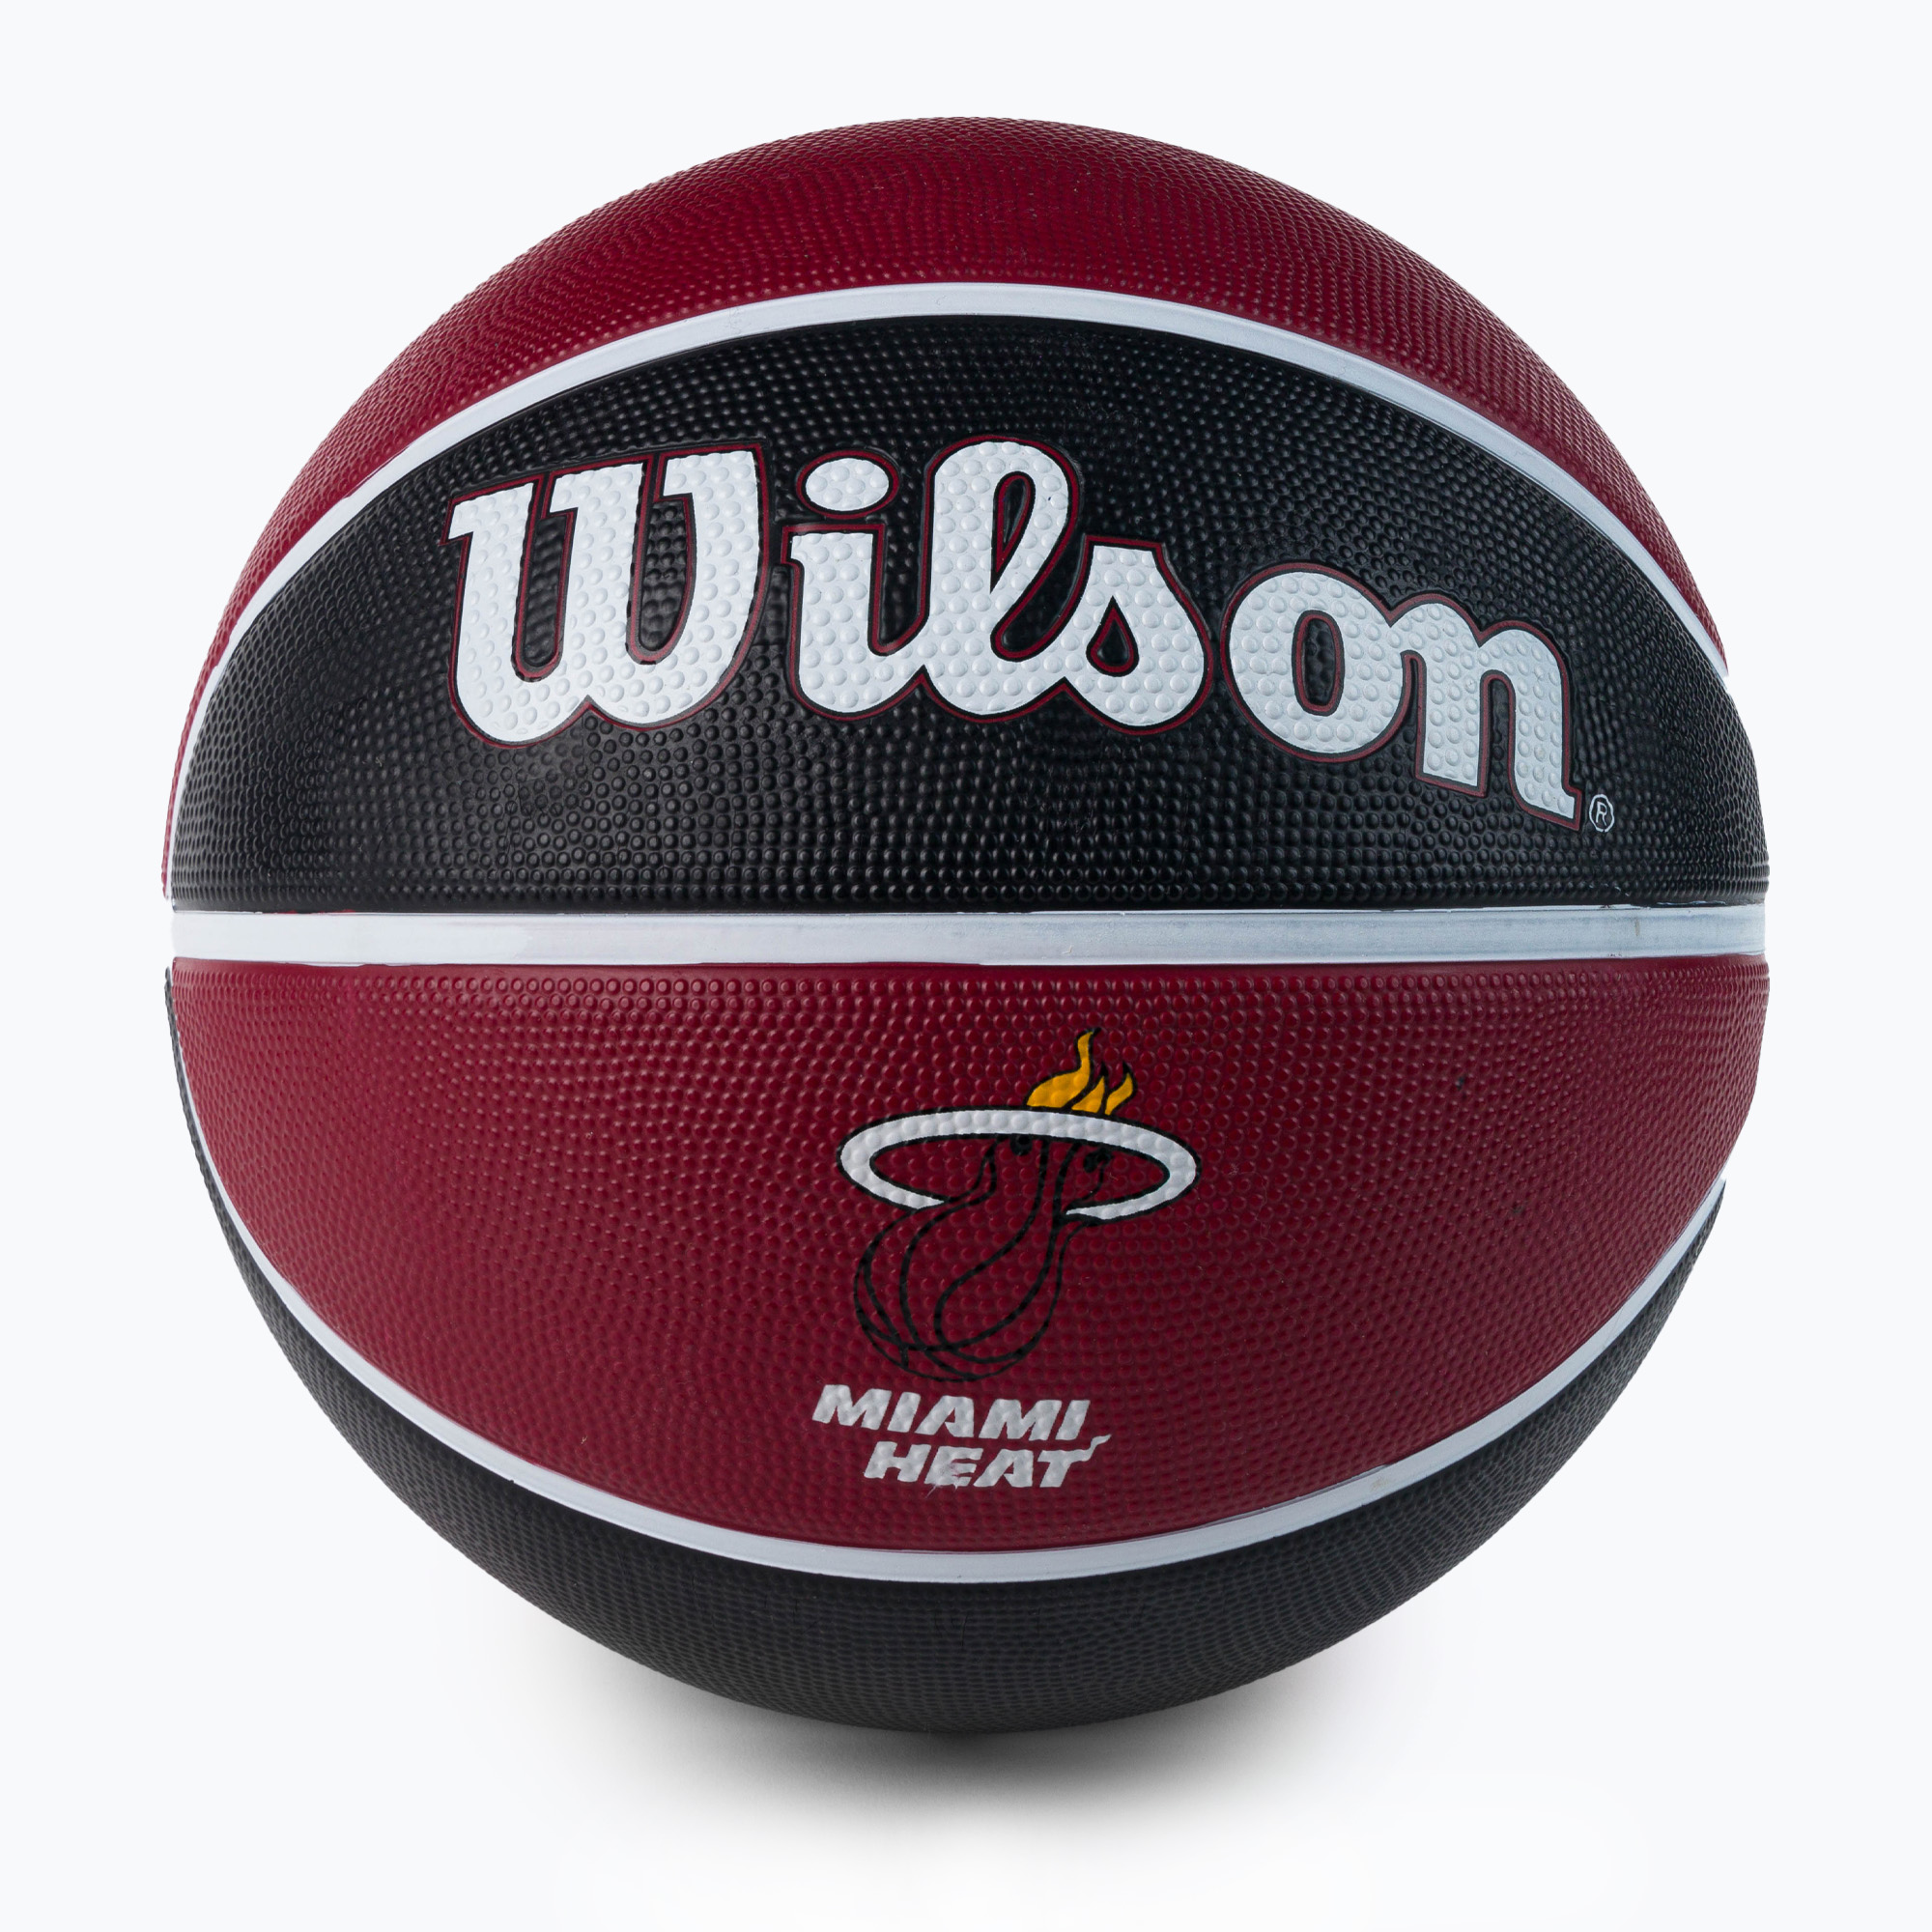 Wilson NBA Team Tribute Miami Heat basketbalová červená WTB1300XBMIA veľkosť 7